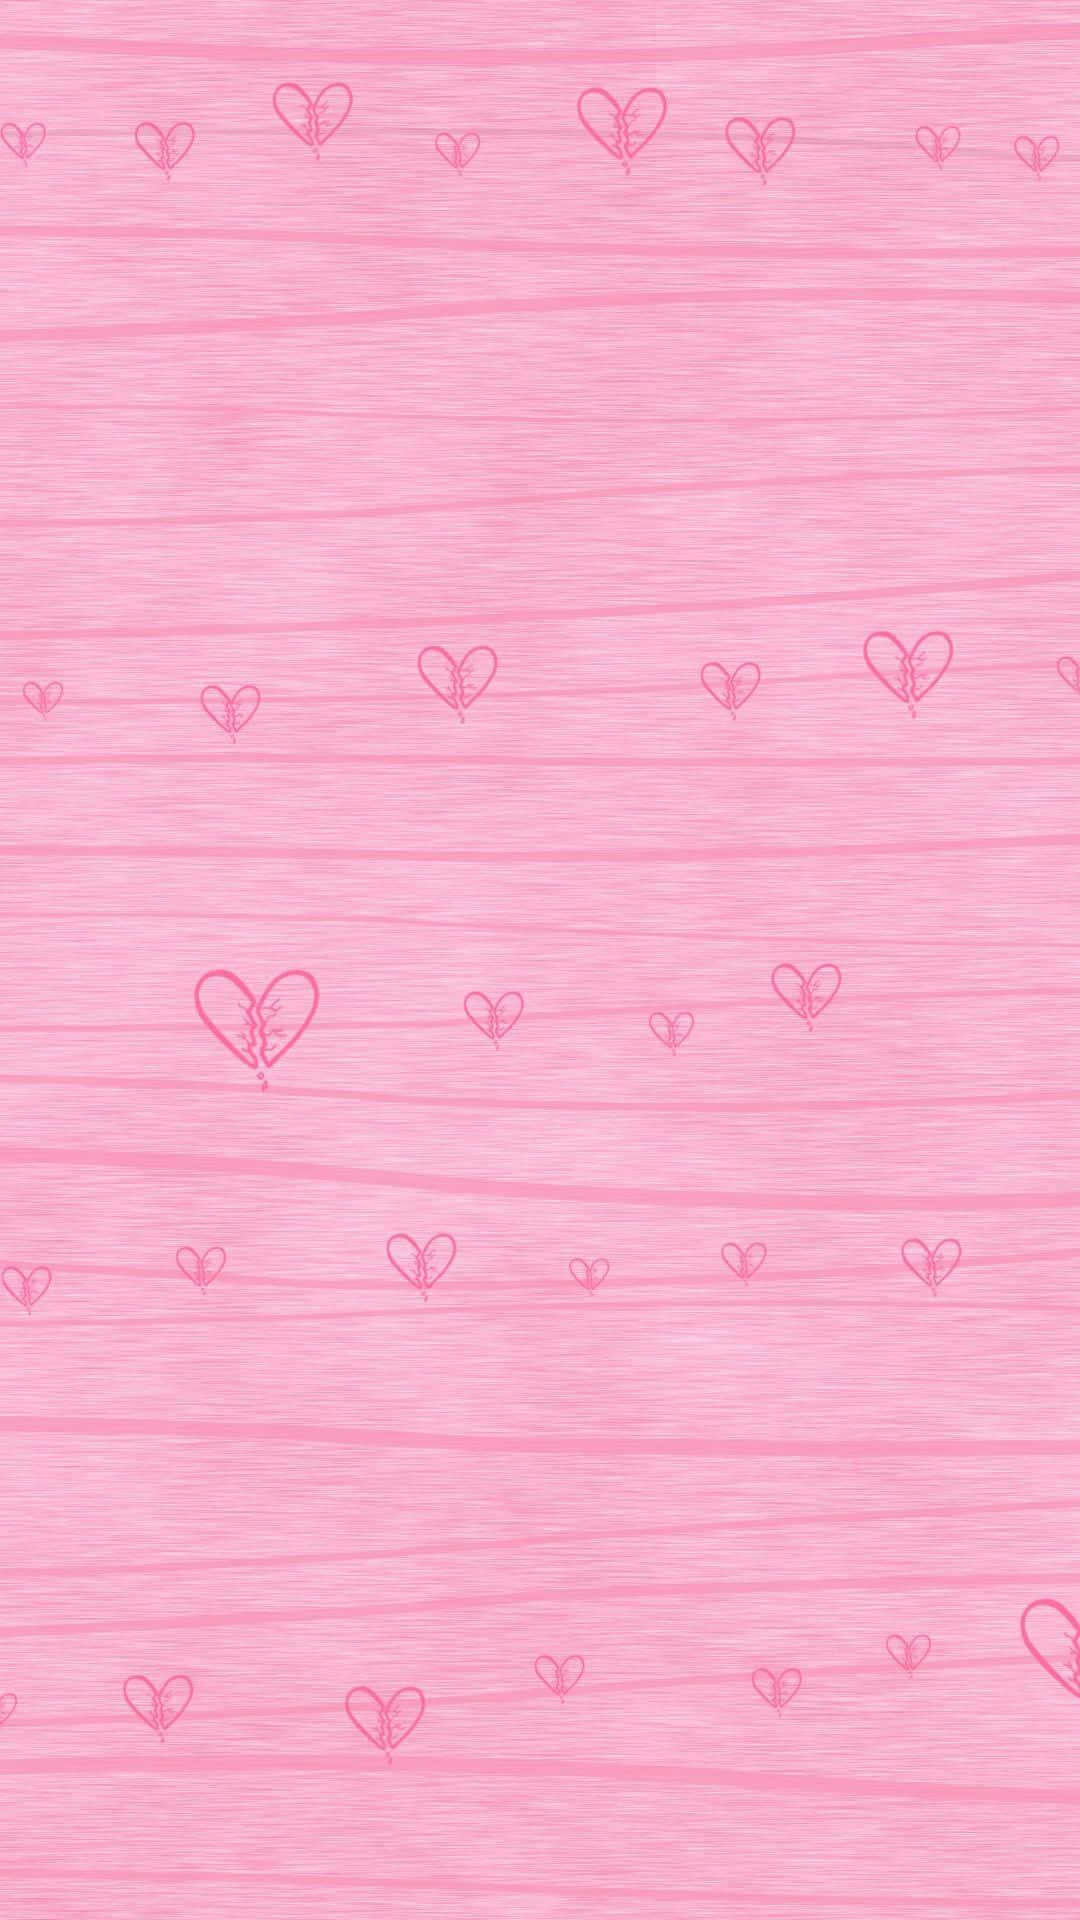 Tiny Broken Pink Hearts Iphone Wallpaper